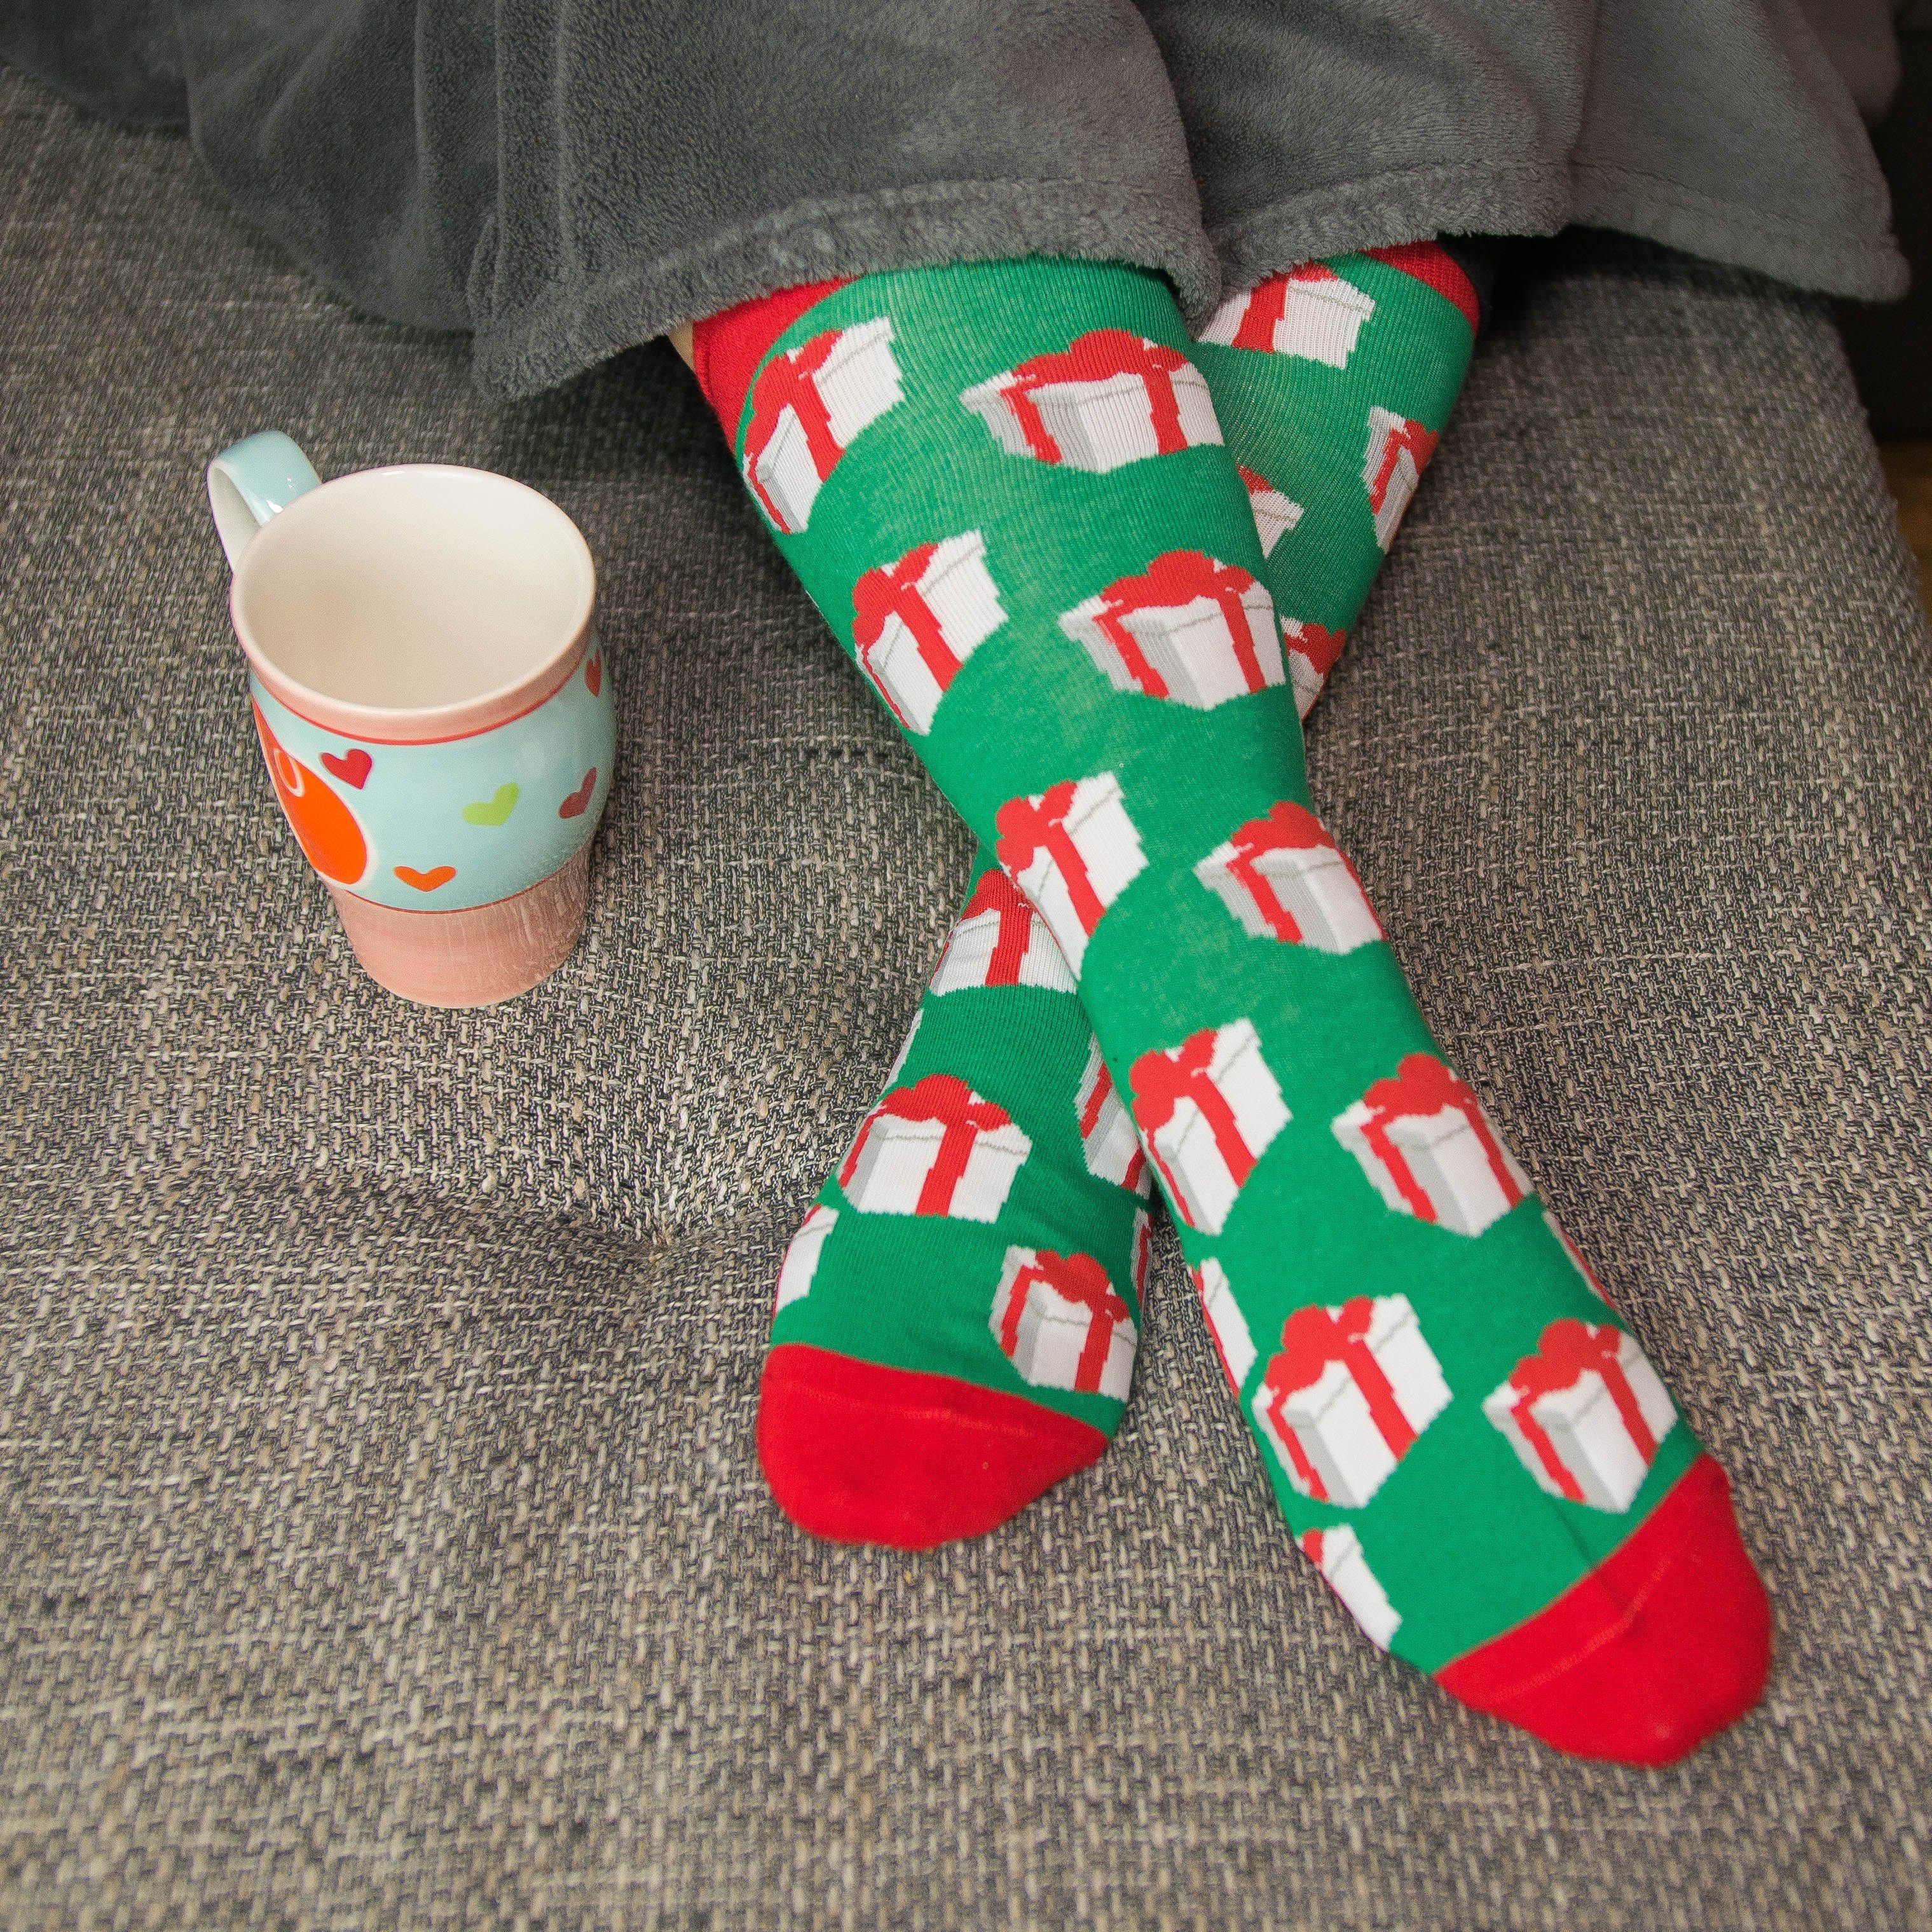 TwoSocks Freizeitsocken Weihnachtssocken Set Damen Socken, Herren witzige Paar) Einheitsgröße & 4er-Pack (4